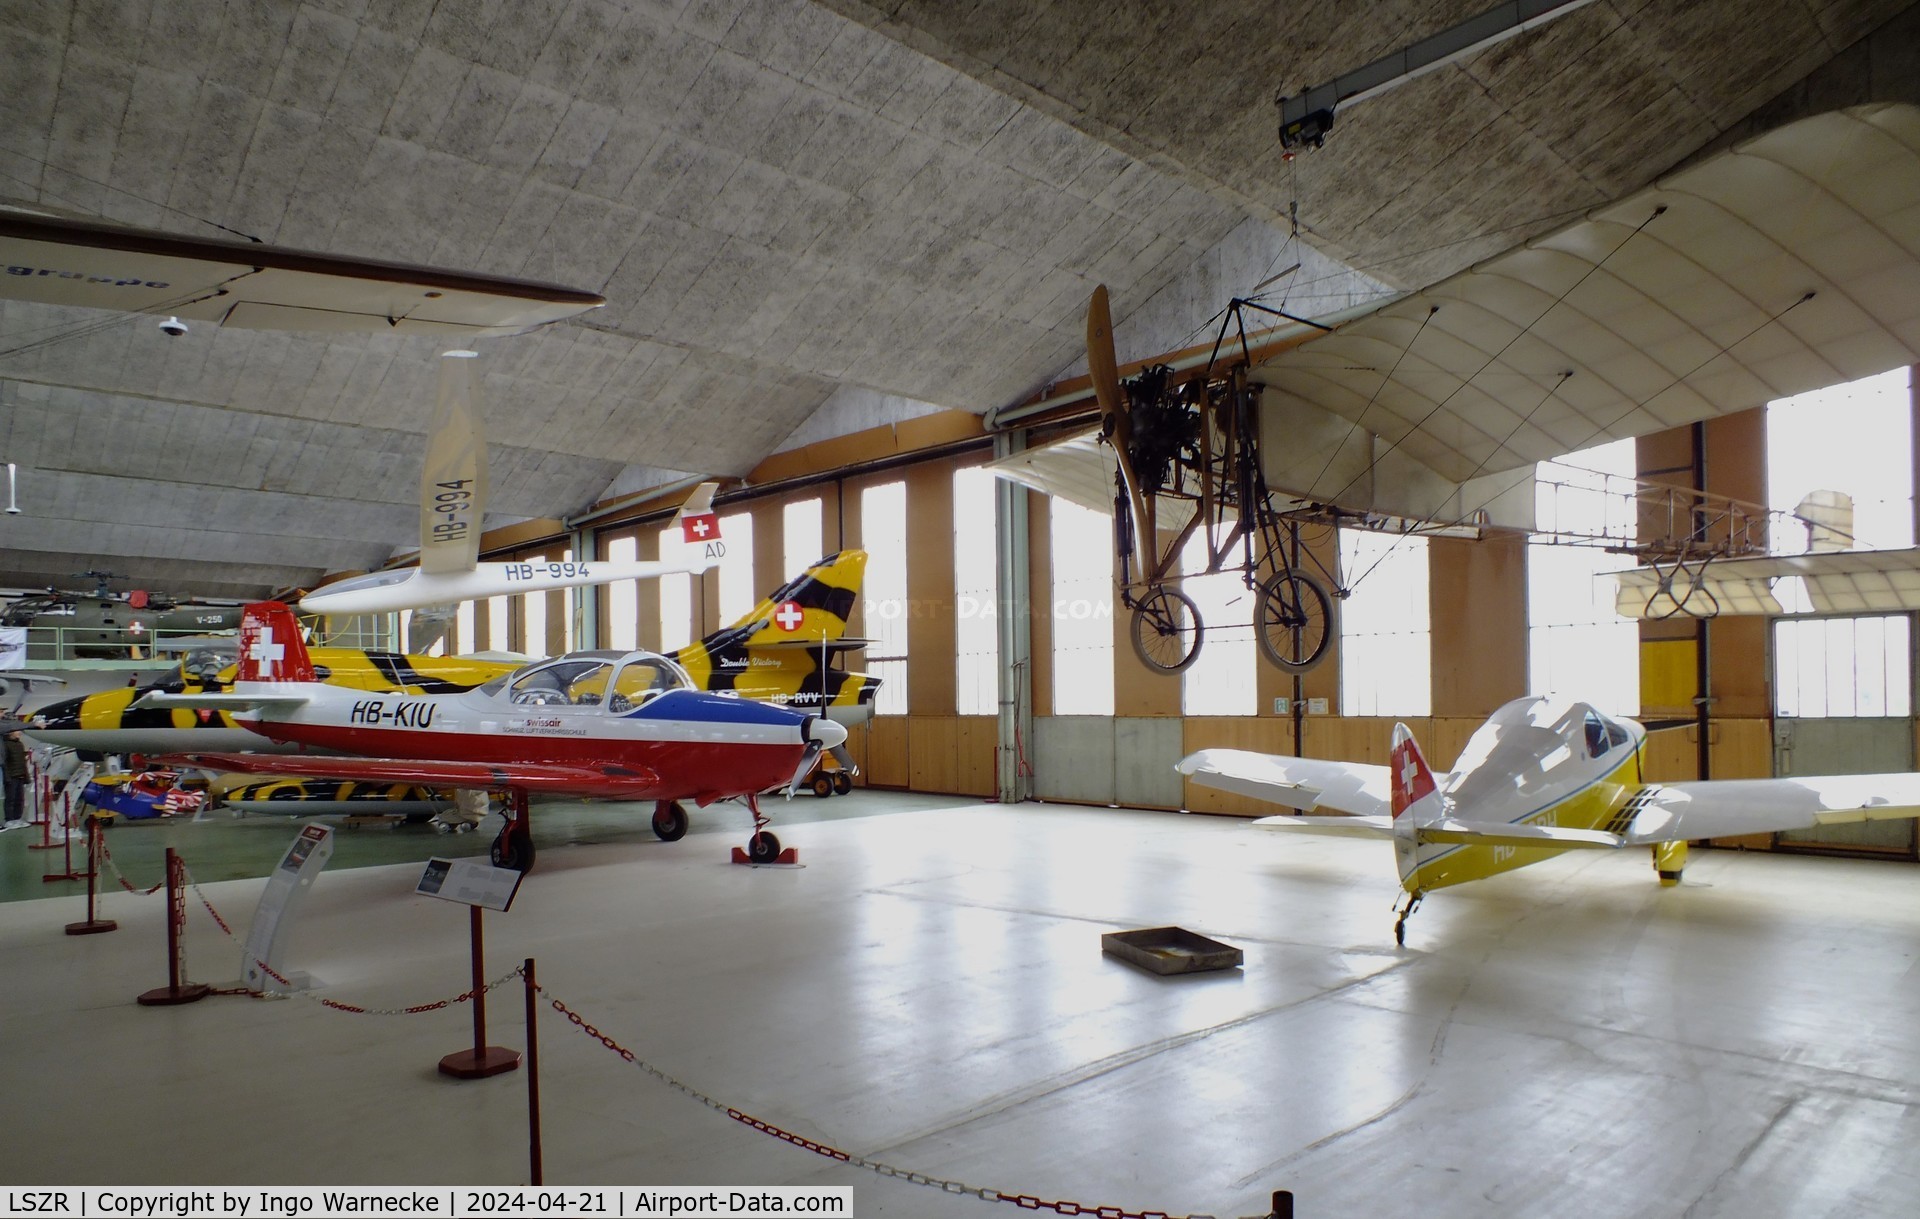 St. Gallen-Altenrhein Airport, Altenrhein Switzerland (LSZR) - inside the hangar of the FFA Museum at St.Gallen-Altenrhein airport